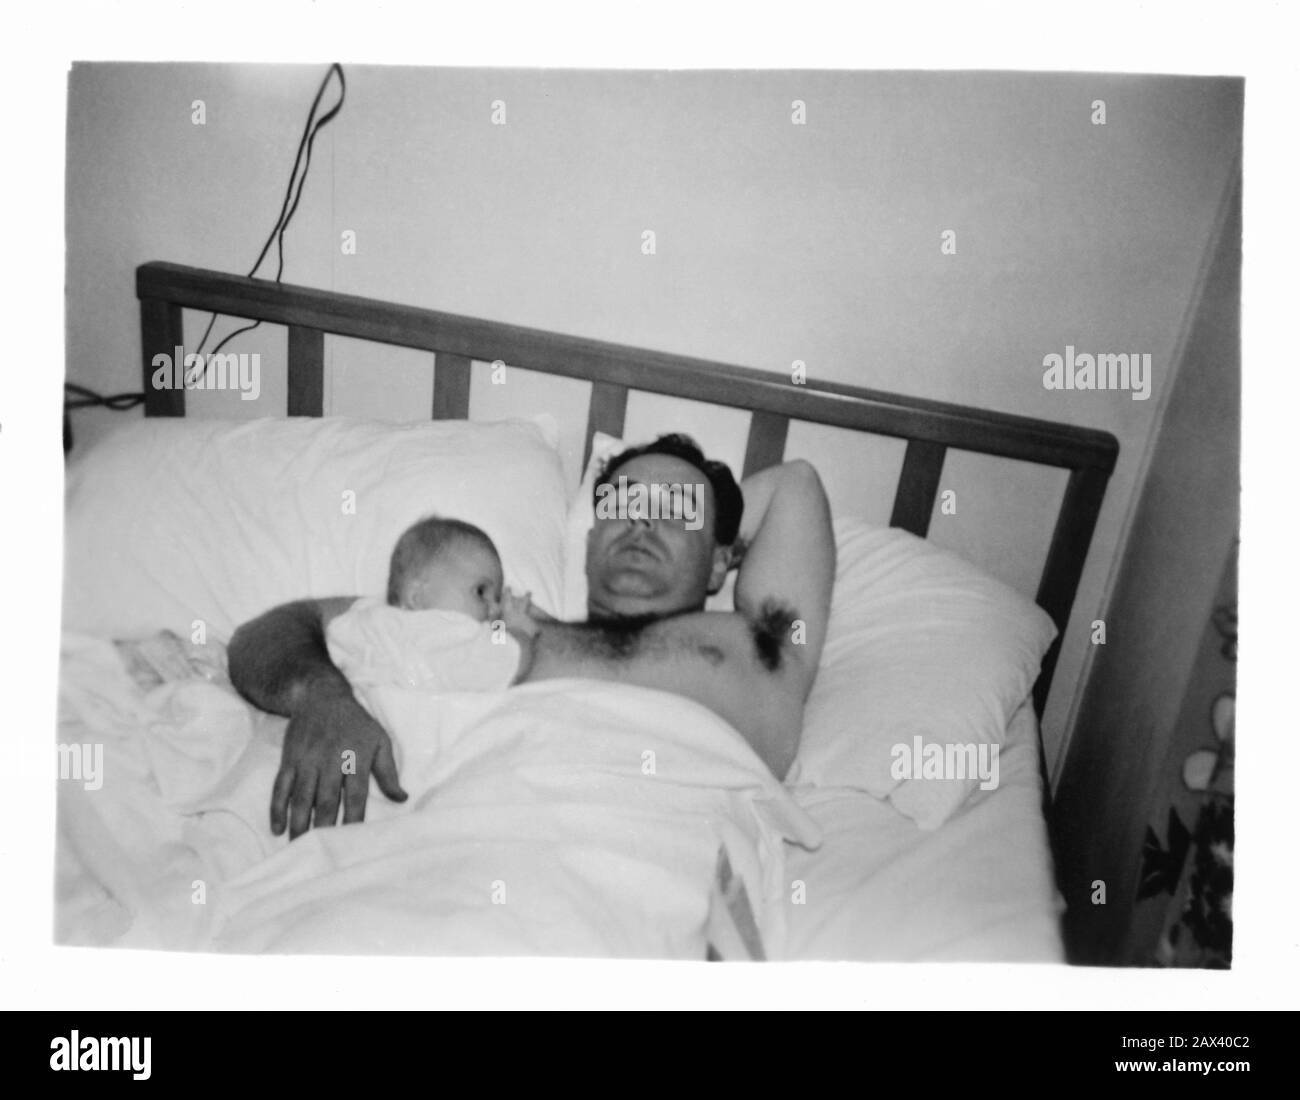 1944 , USA : A father with little child son   - FOTO STORICHE - HISTORY PHOTOS -  BAMBINA -  CHILD - BAMBINO - BAMBINI - BAMBINE - CHILDREN -  tenerezza - tenderly - CHILDREN - BAMBINA - BABY - NOVECENTO - 900's - '900 - BABY -  bebé  - CHILDHOOD - INFANZIA - padre - figlio - figlia - papa' - letto - bed - abbraccio - embrace - tenderly - bedroom - camera da letto - foto amatoriale non professionale - Istamatick   ----- Archivio GBB Stock Photo